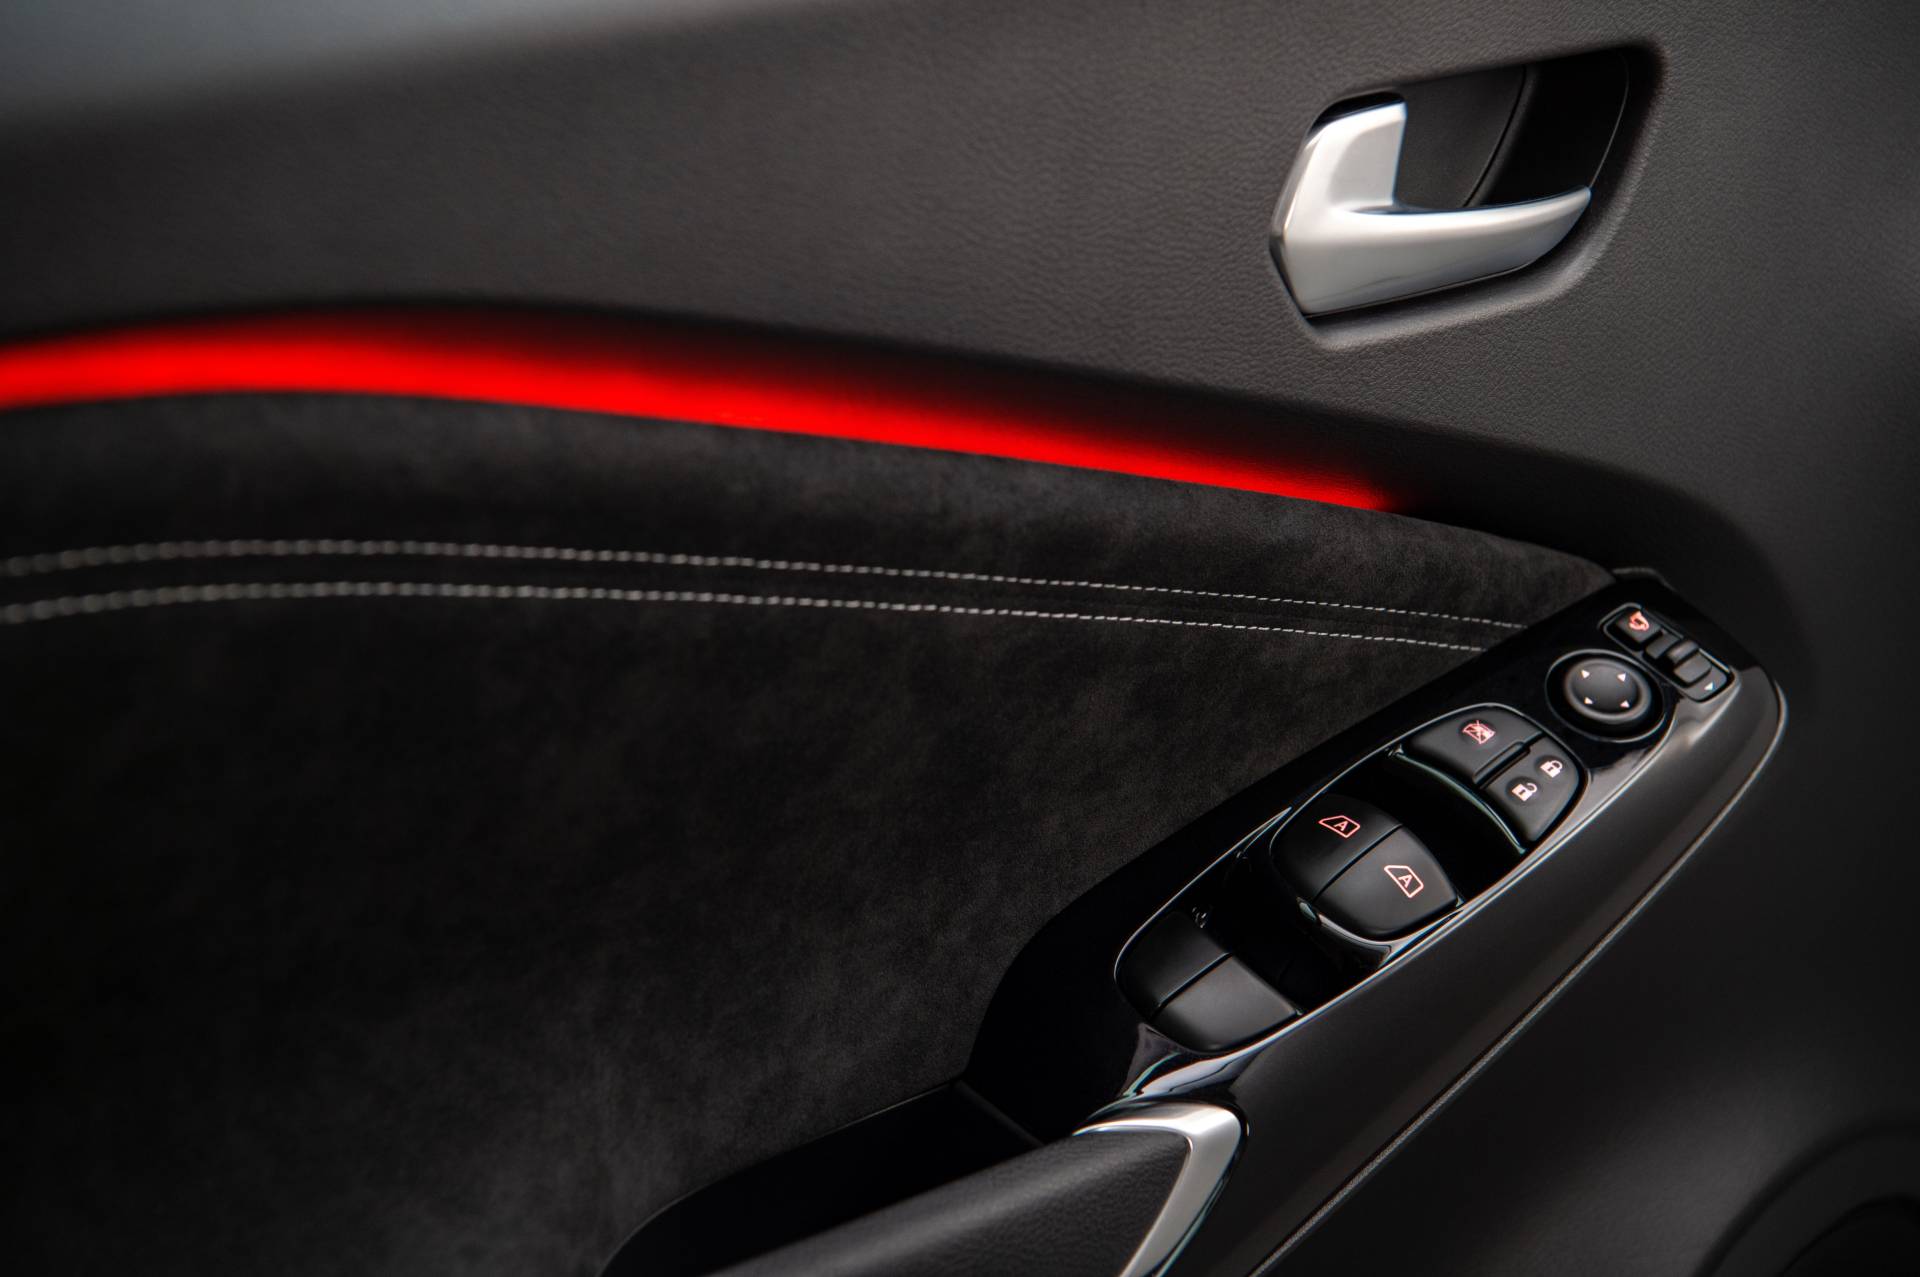 2020 Nissan Juke tanıtıldı: İşte özellikleri ve fiyatı